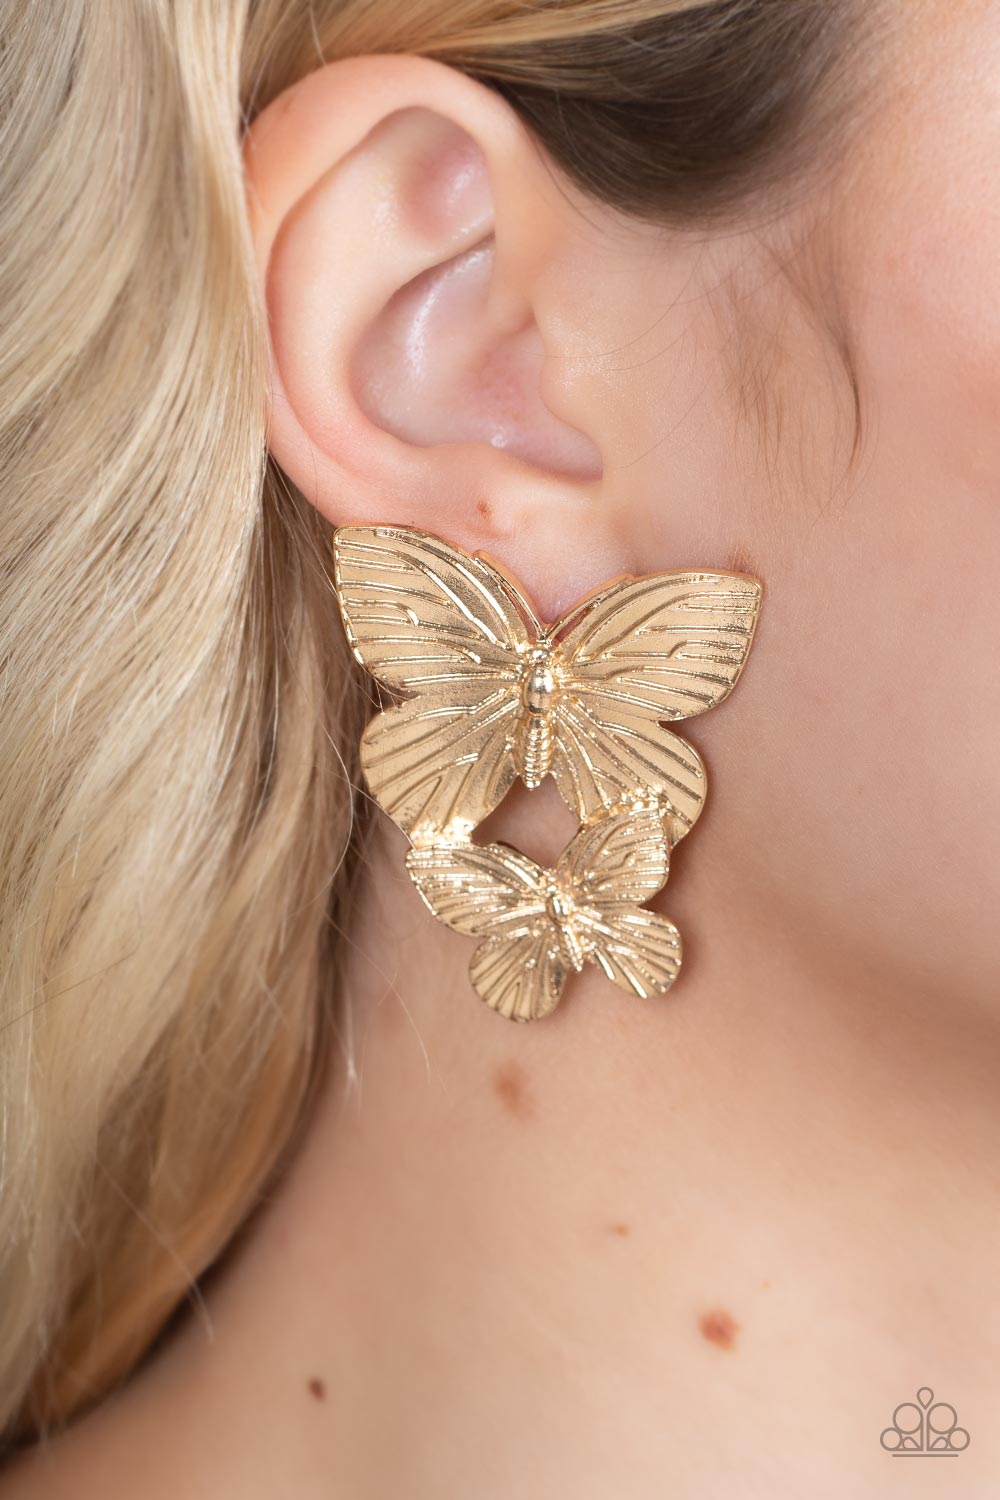 Blushing Butterflies Earring (Gold, Silver, Brass)